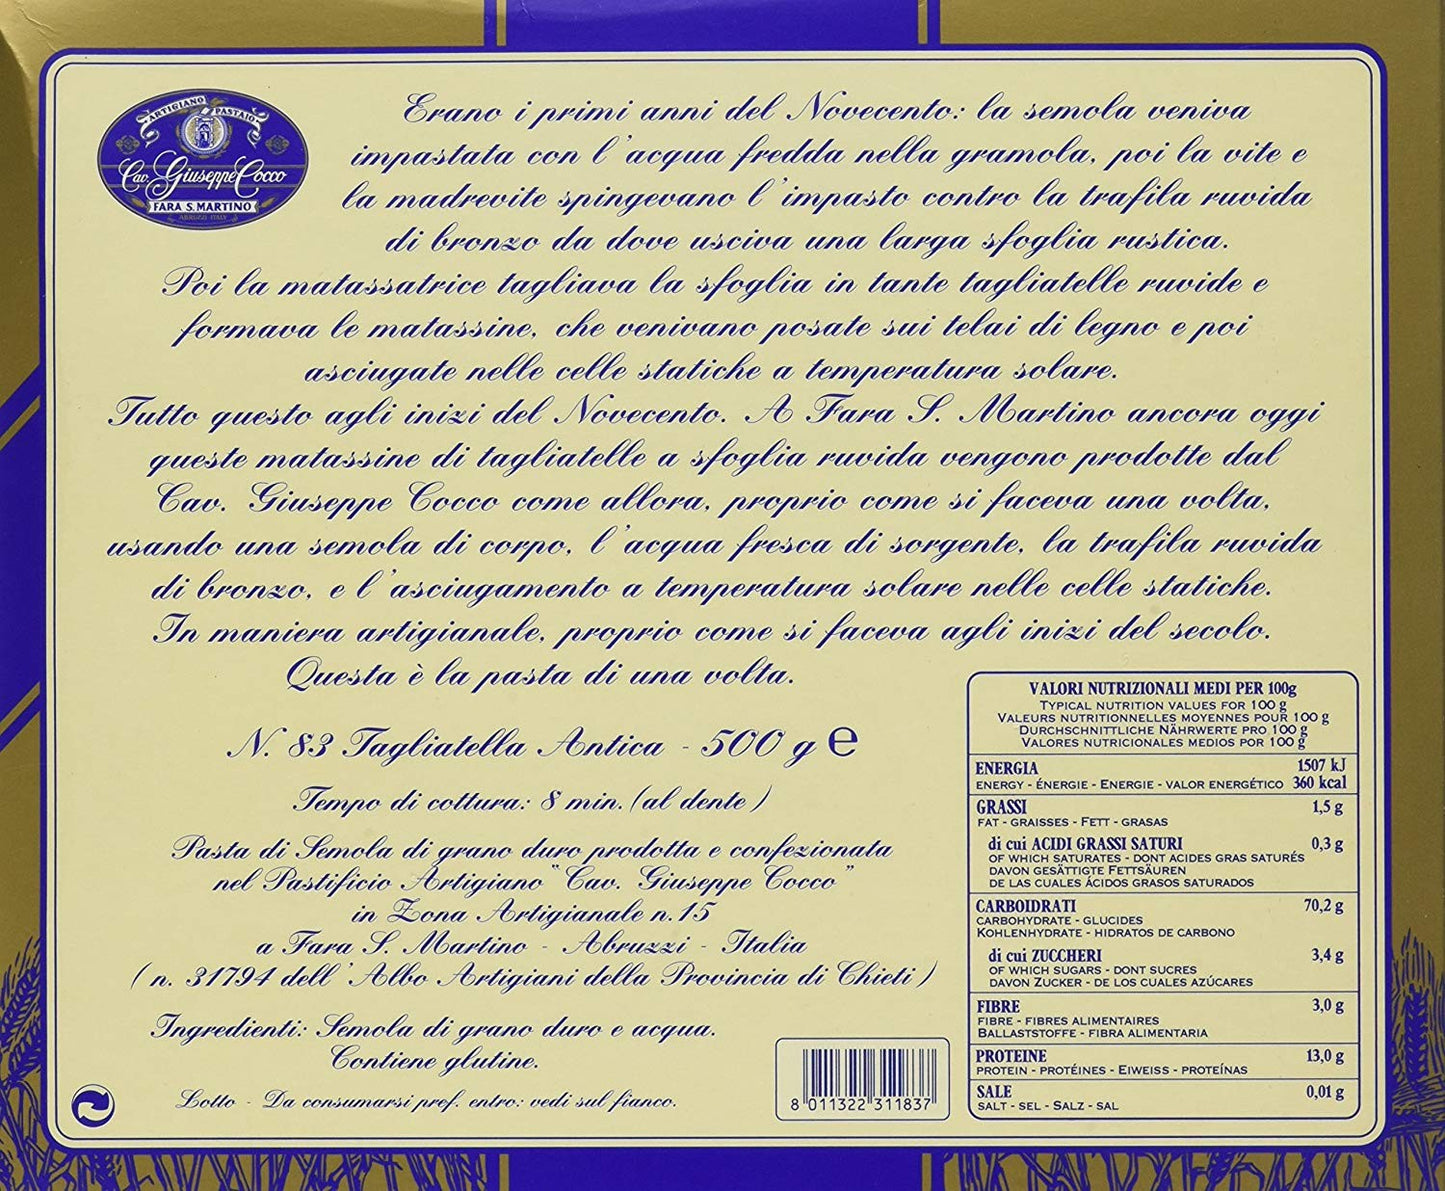 Artigiano Pastaio Formato Tagliatella Antica N.83 Cavalier Giuseppe Cocco Fara San Martino Abruzzo - 500 g